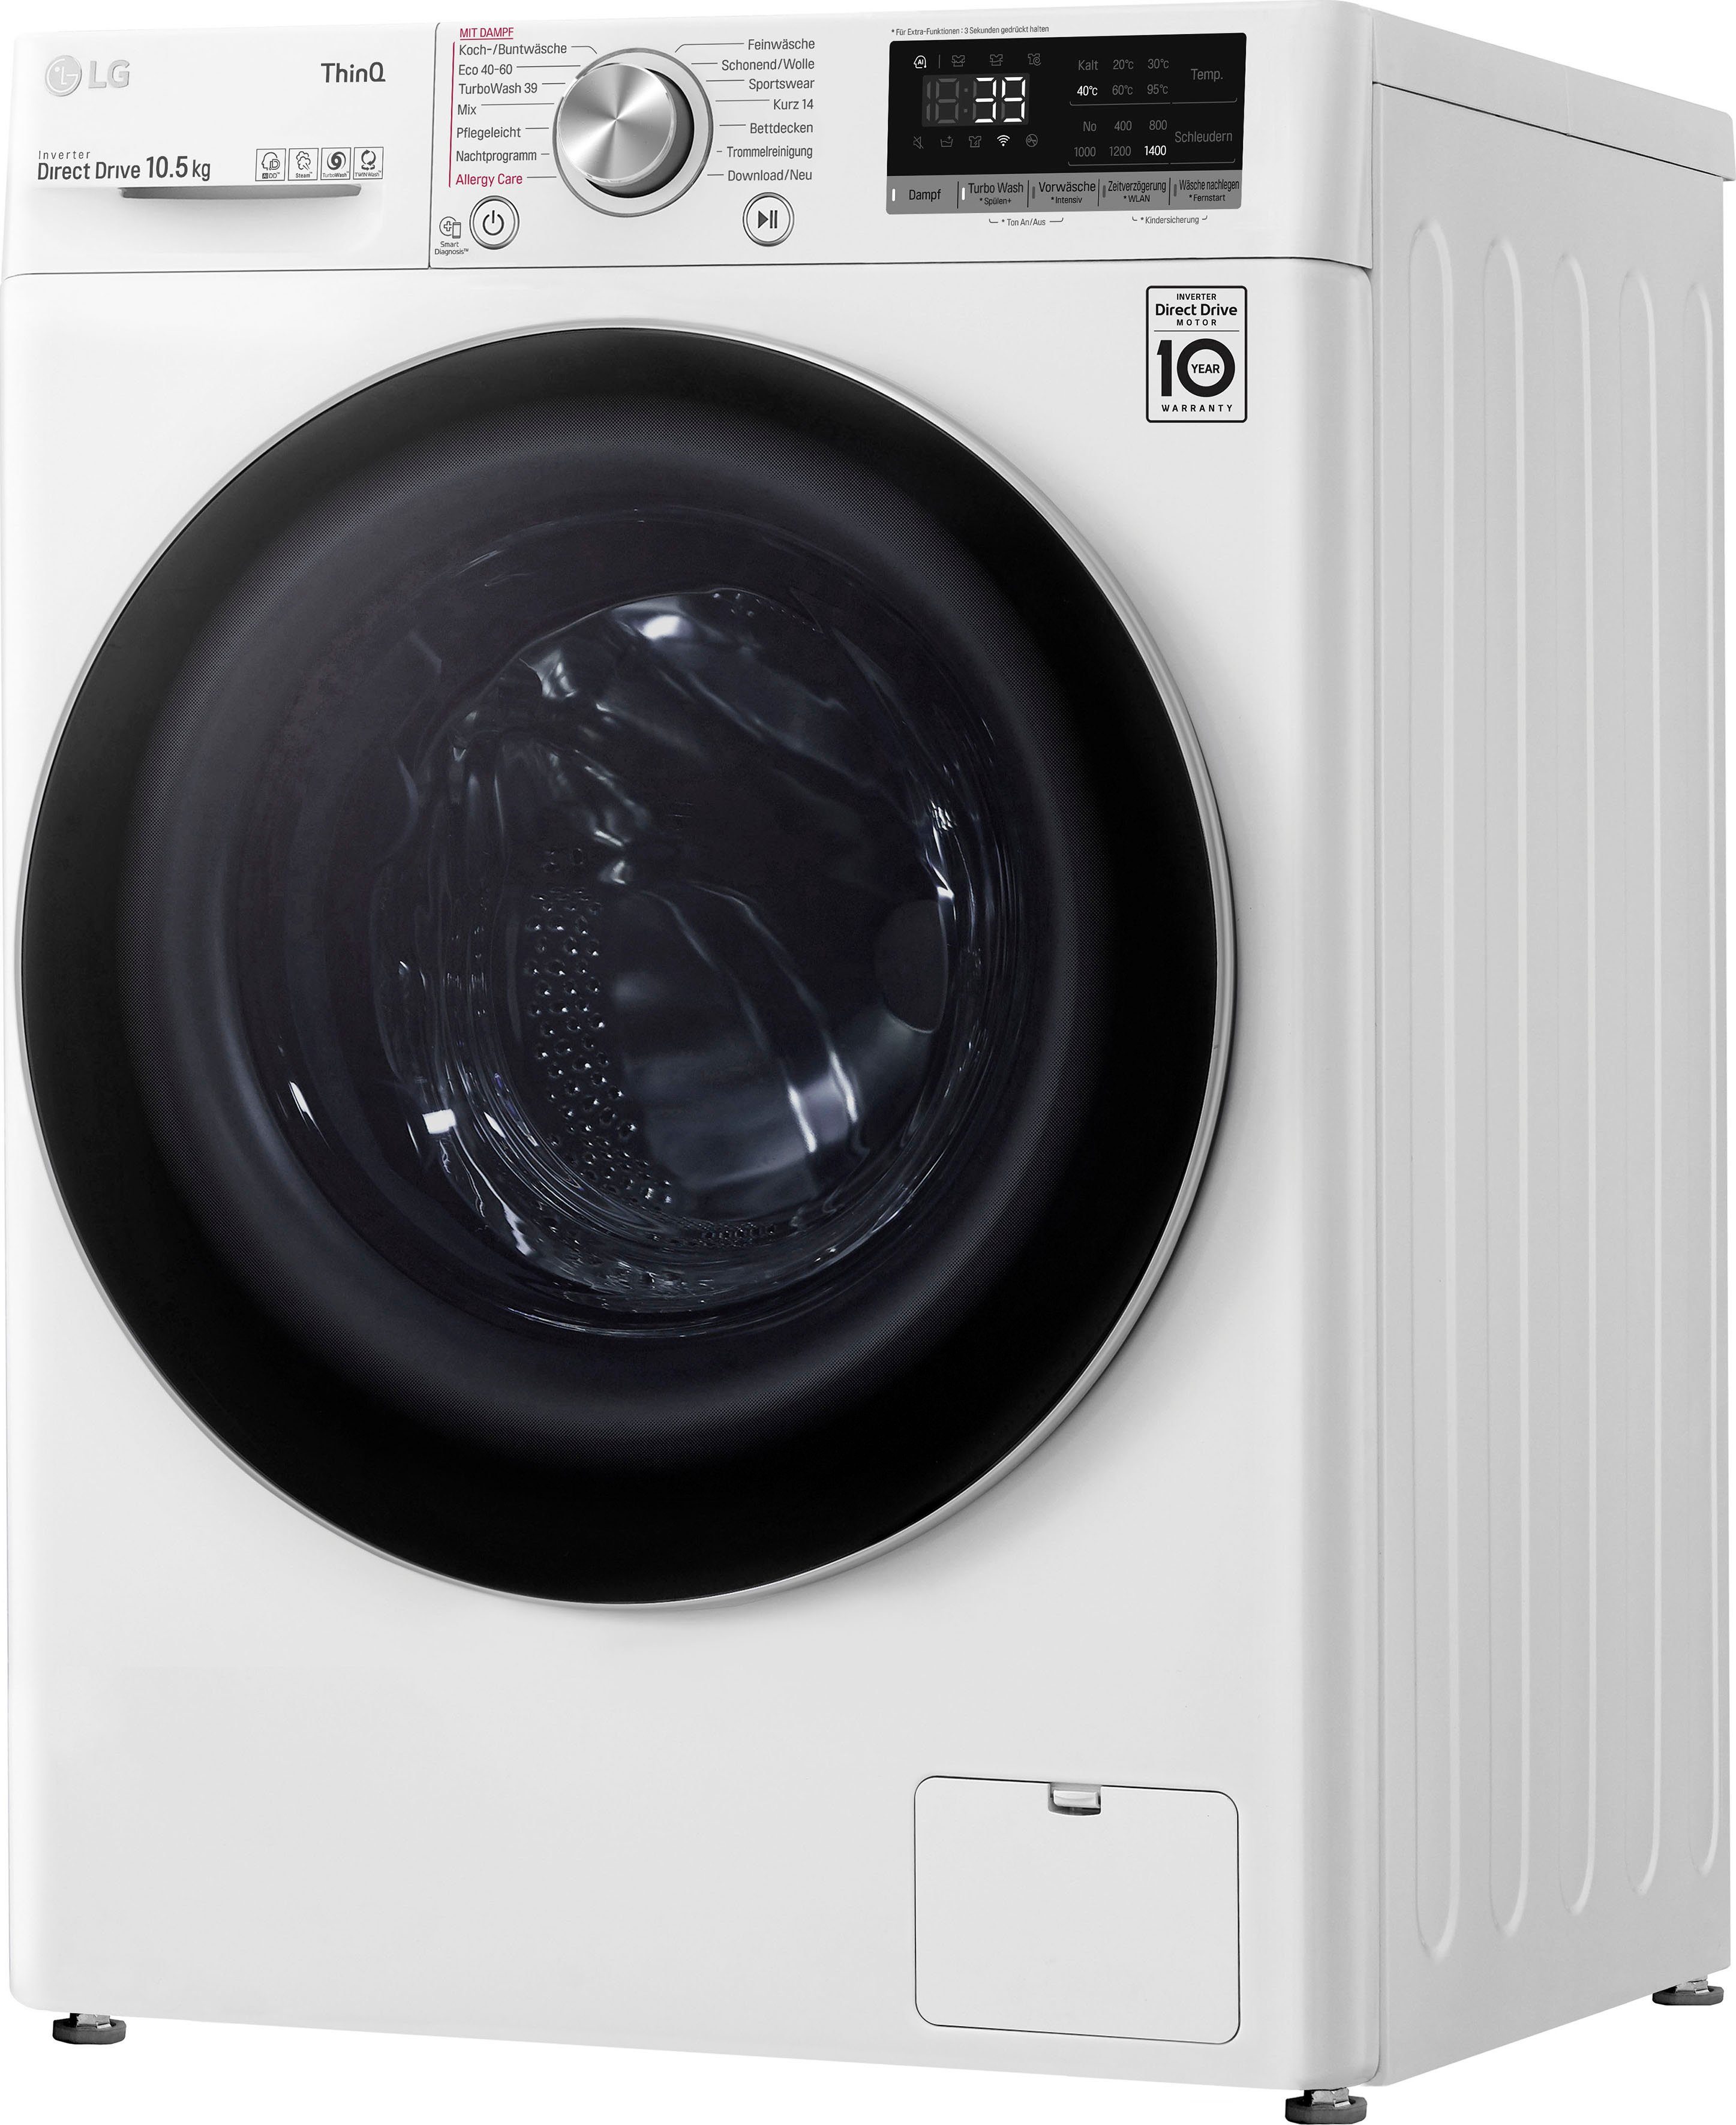 LG Waschmaschine Serie 7 F4WV710P1E, 10,5 kg, 1400 U/min, TurboWash® -  Waschen in nur 39 Minuten